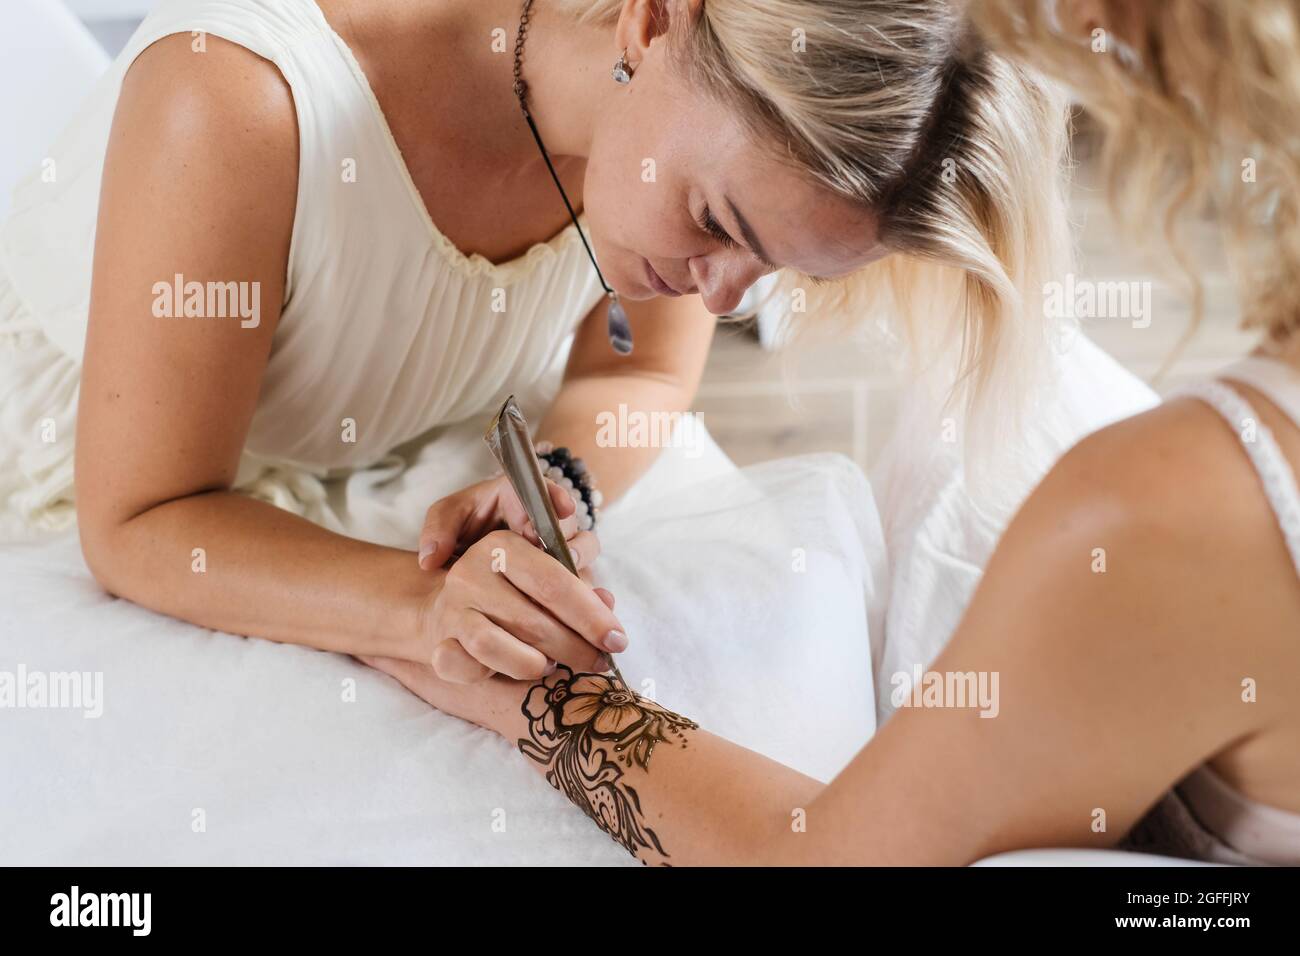 Artista que aplica tatuaje de henna en las manos de la mujer. Mehndi es arte decorativo tradicional indio, mano con mehendi floral. Dibujo de belleza para bodas y. Foto de stock